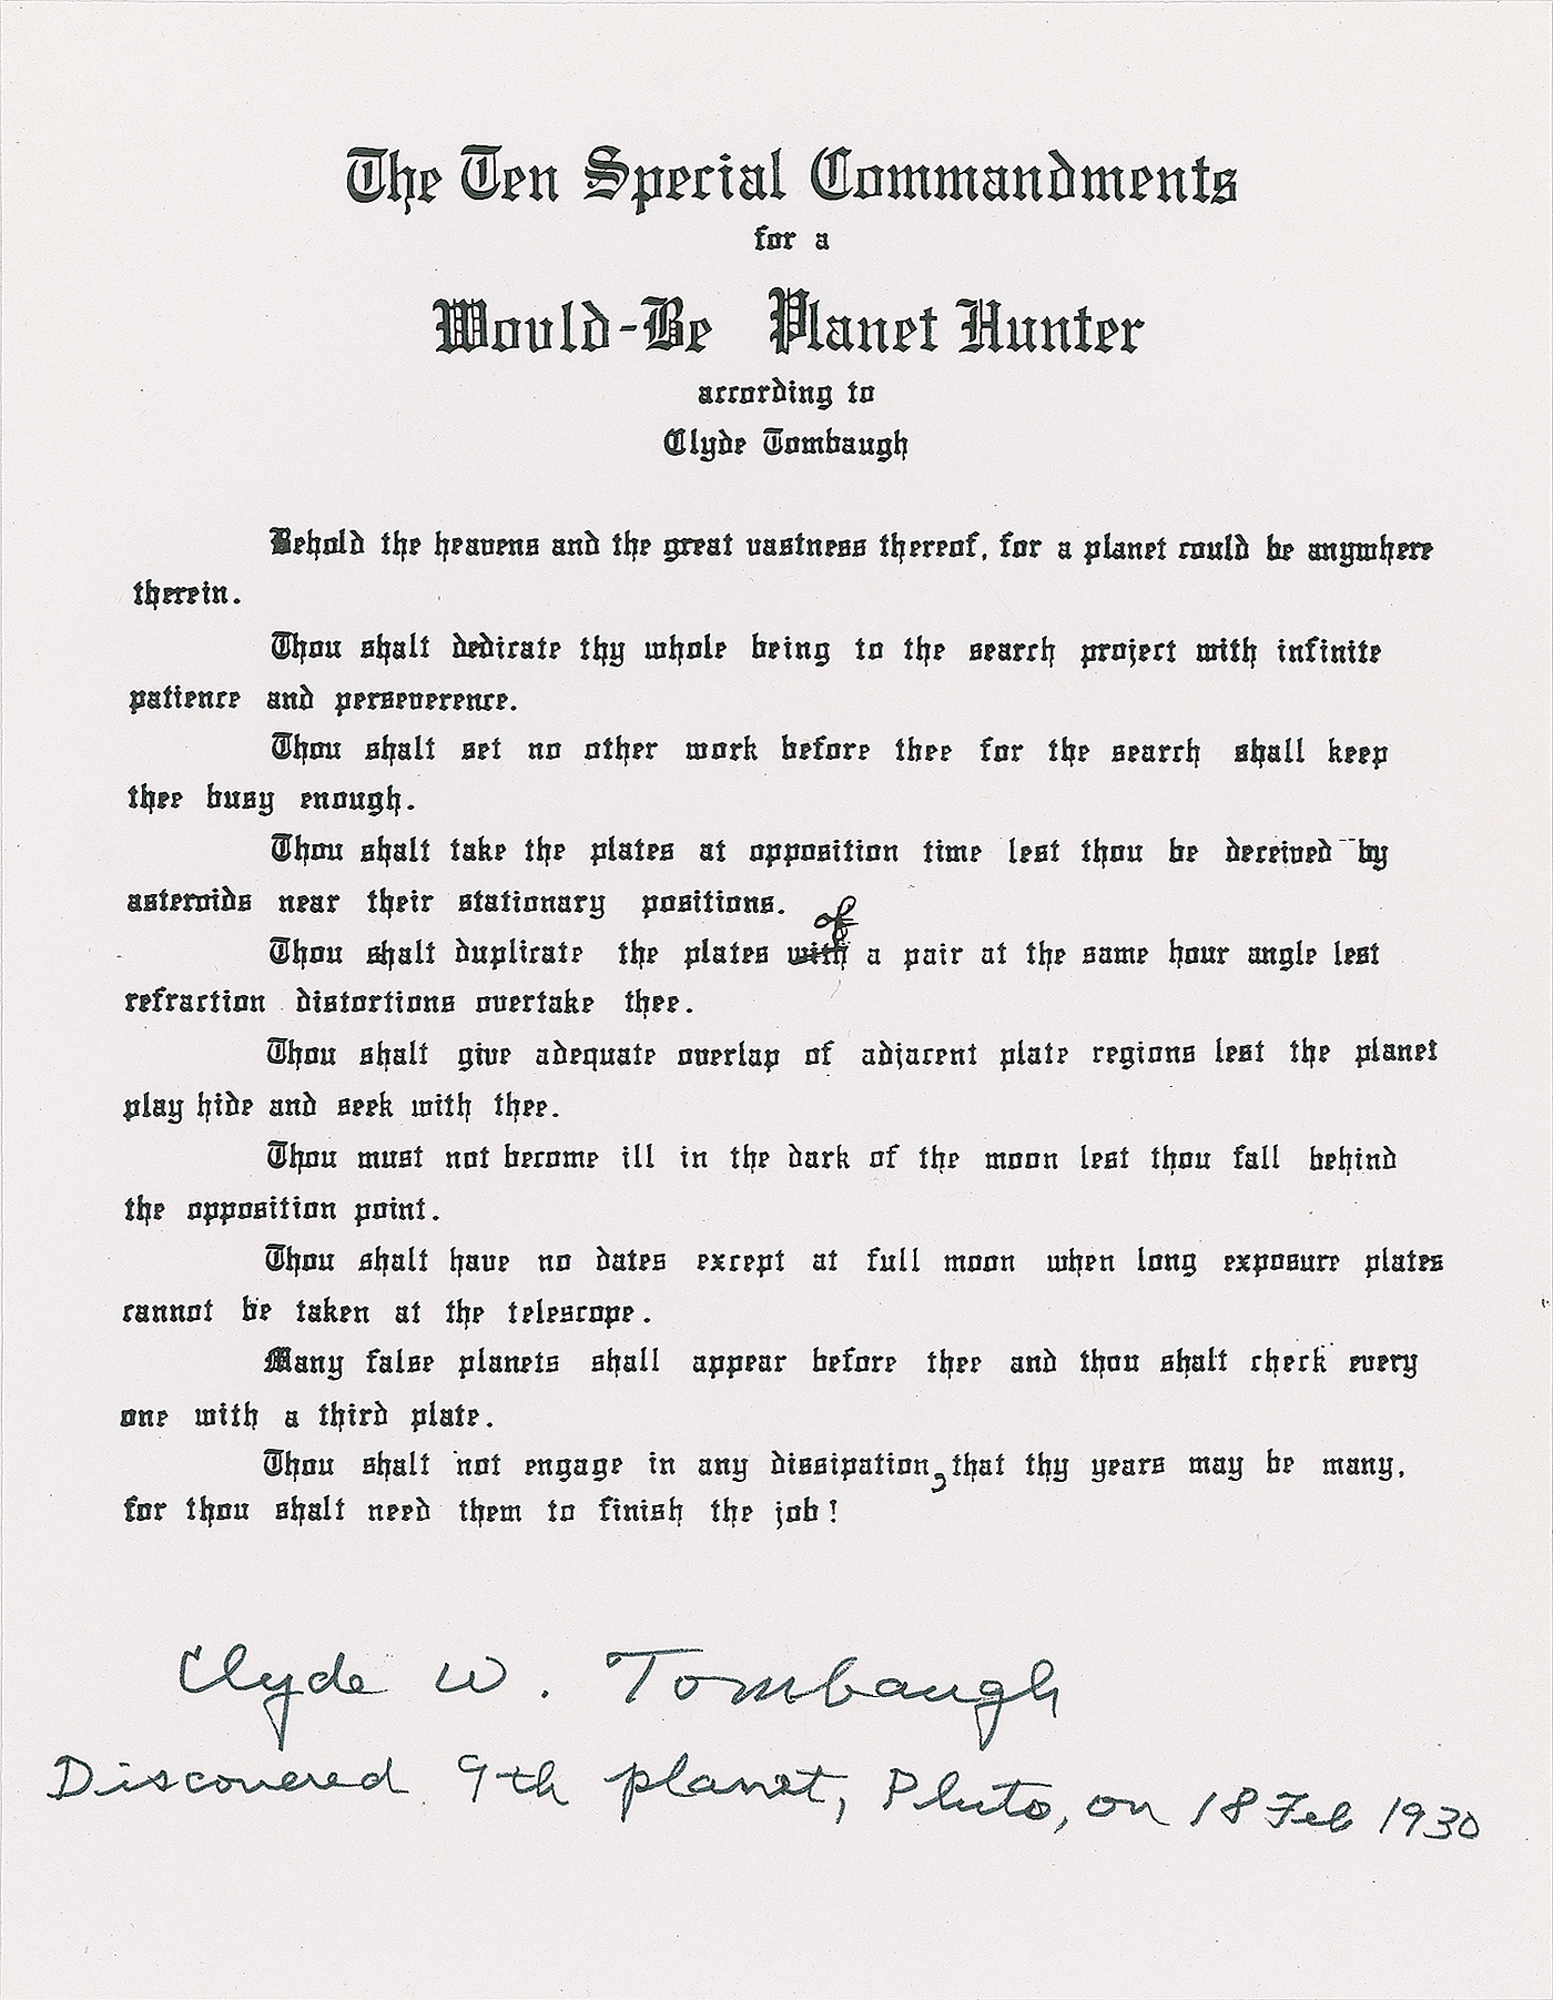 Lot #468 Clyde W. Tombaugh Signed Souvenir Typescript - Image 1